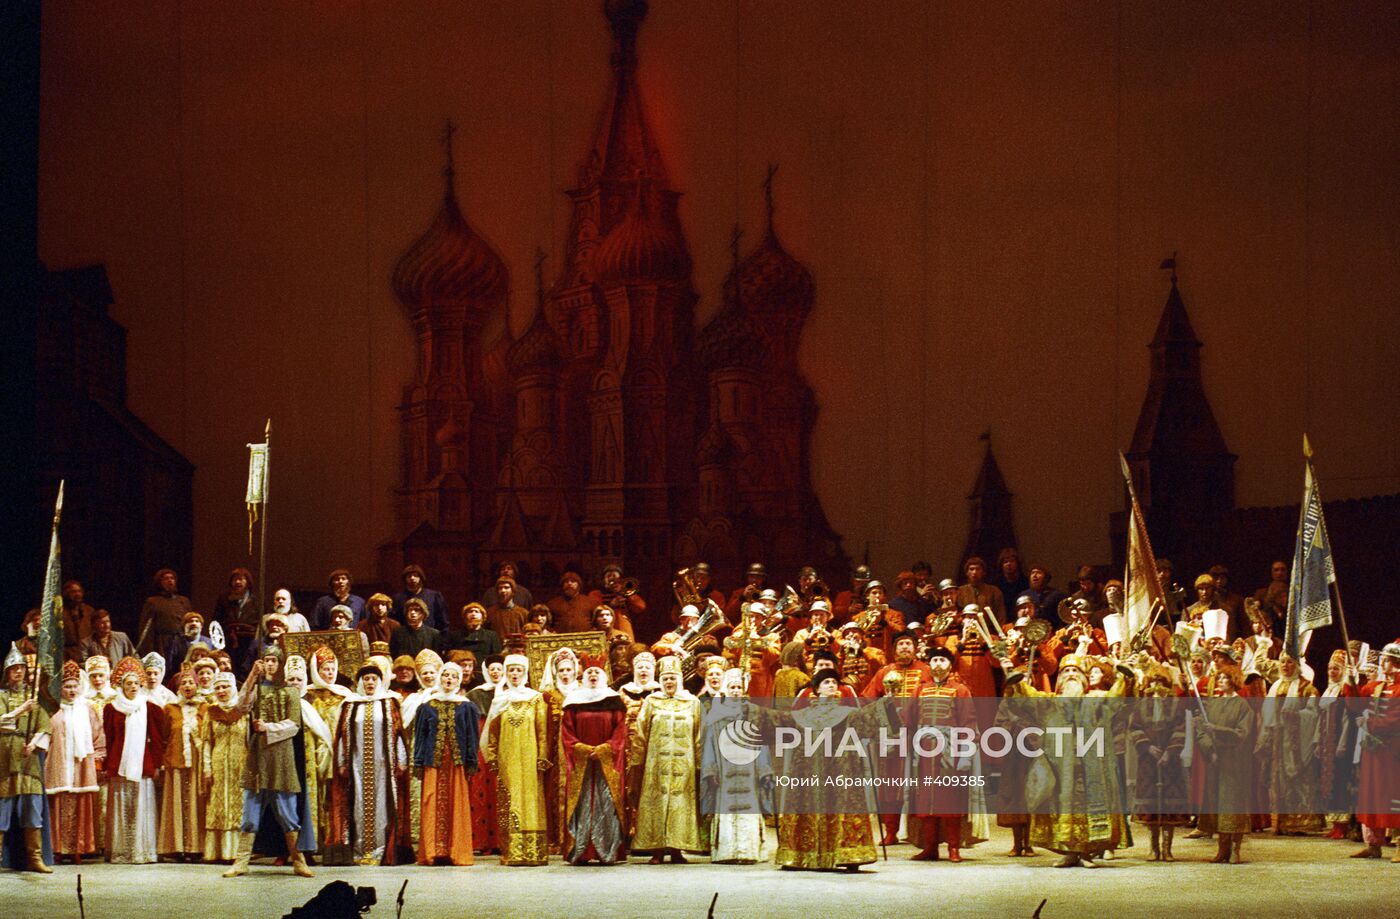 Гала-концерт, посвящённый 225-летию ГАБТа